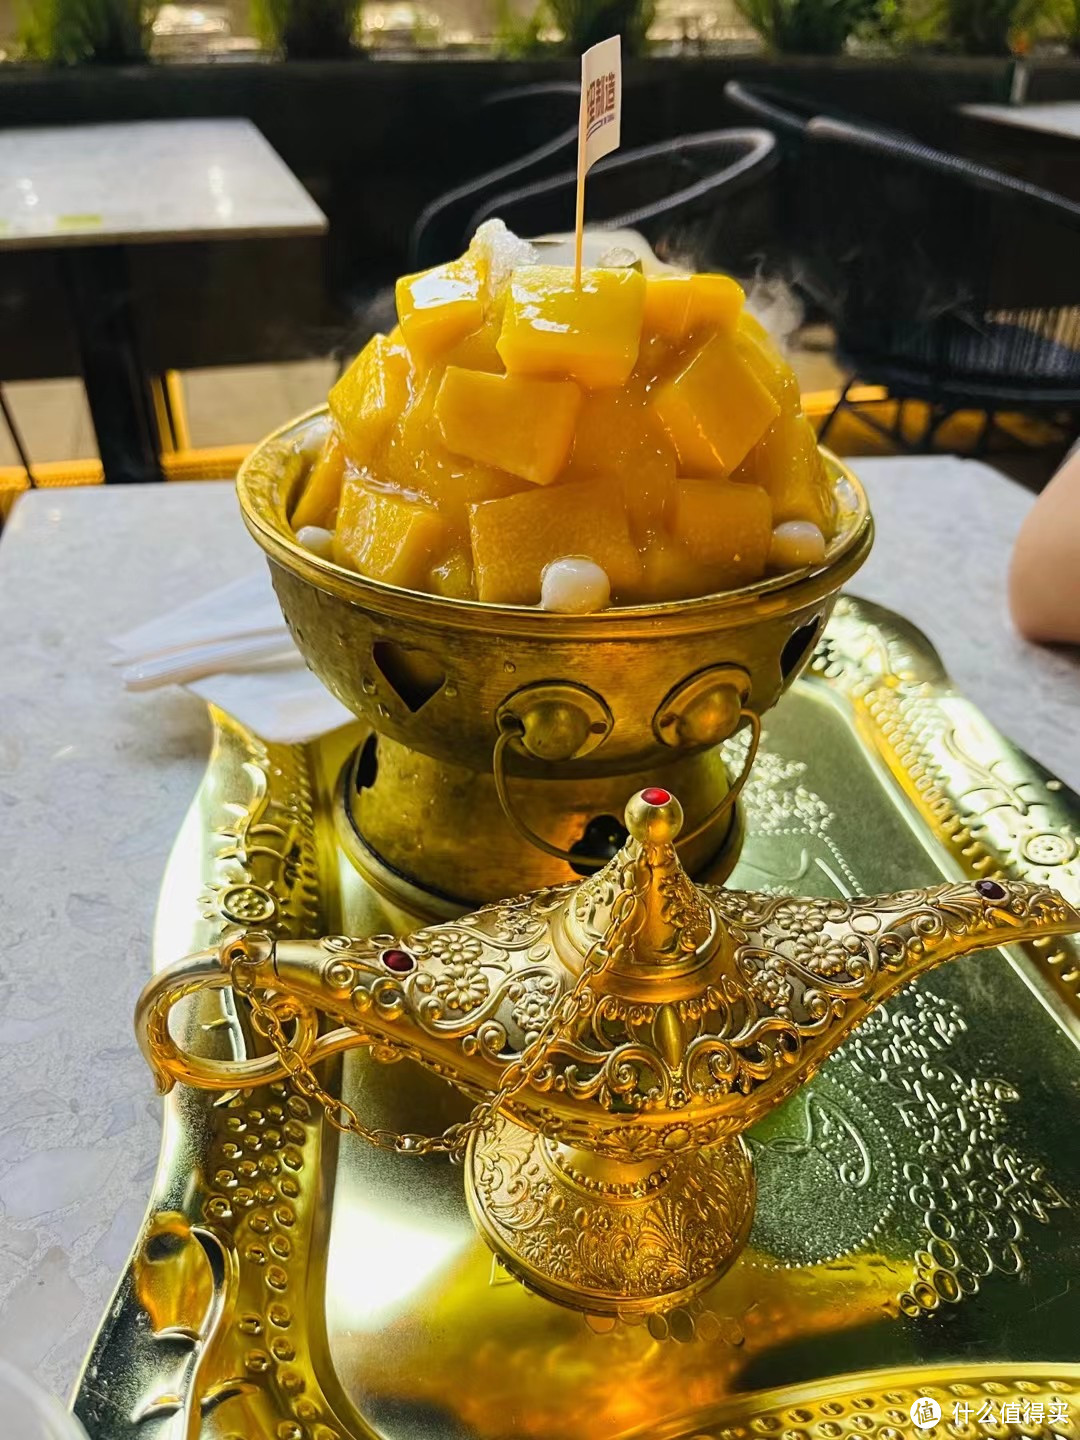 泰国芒果块是一种以芒果为主要原料制成的小吃或甜点